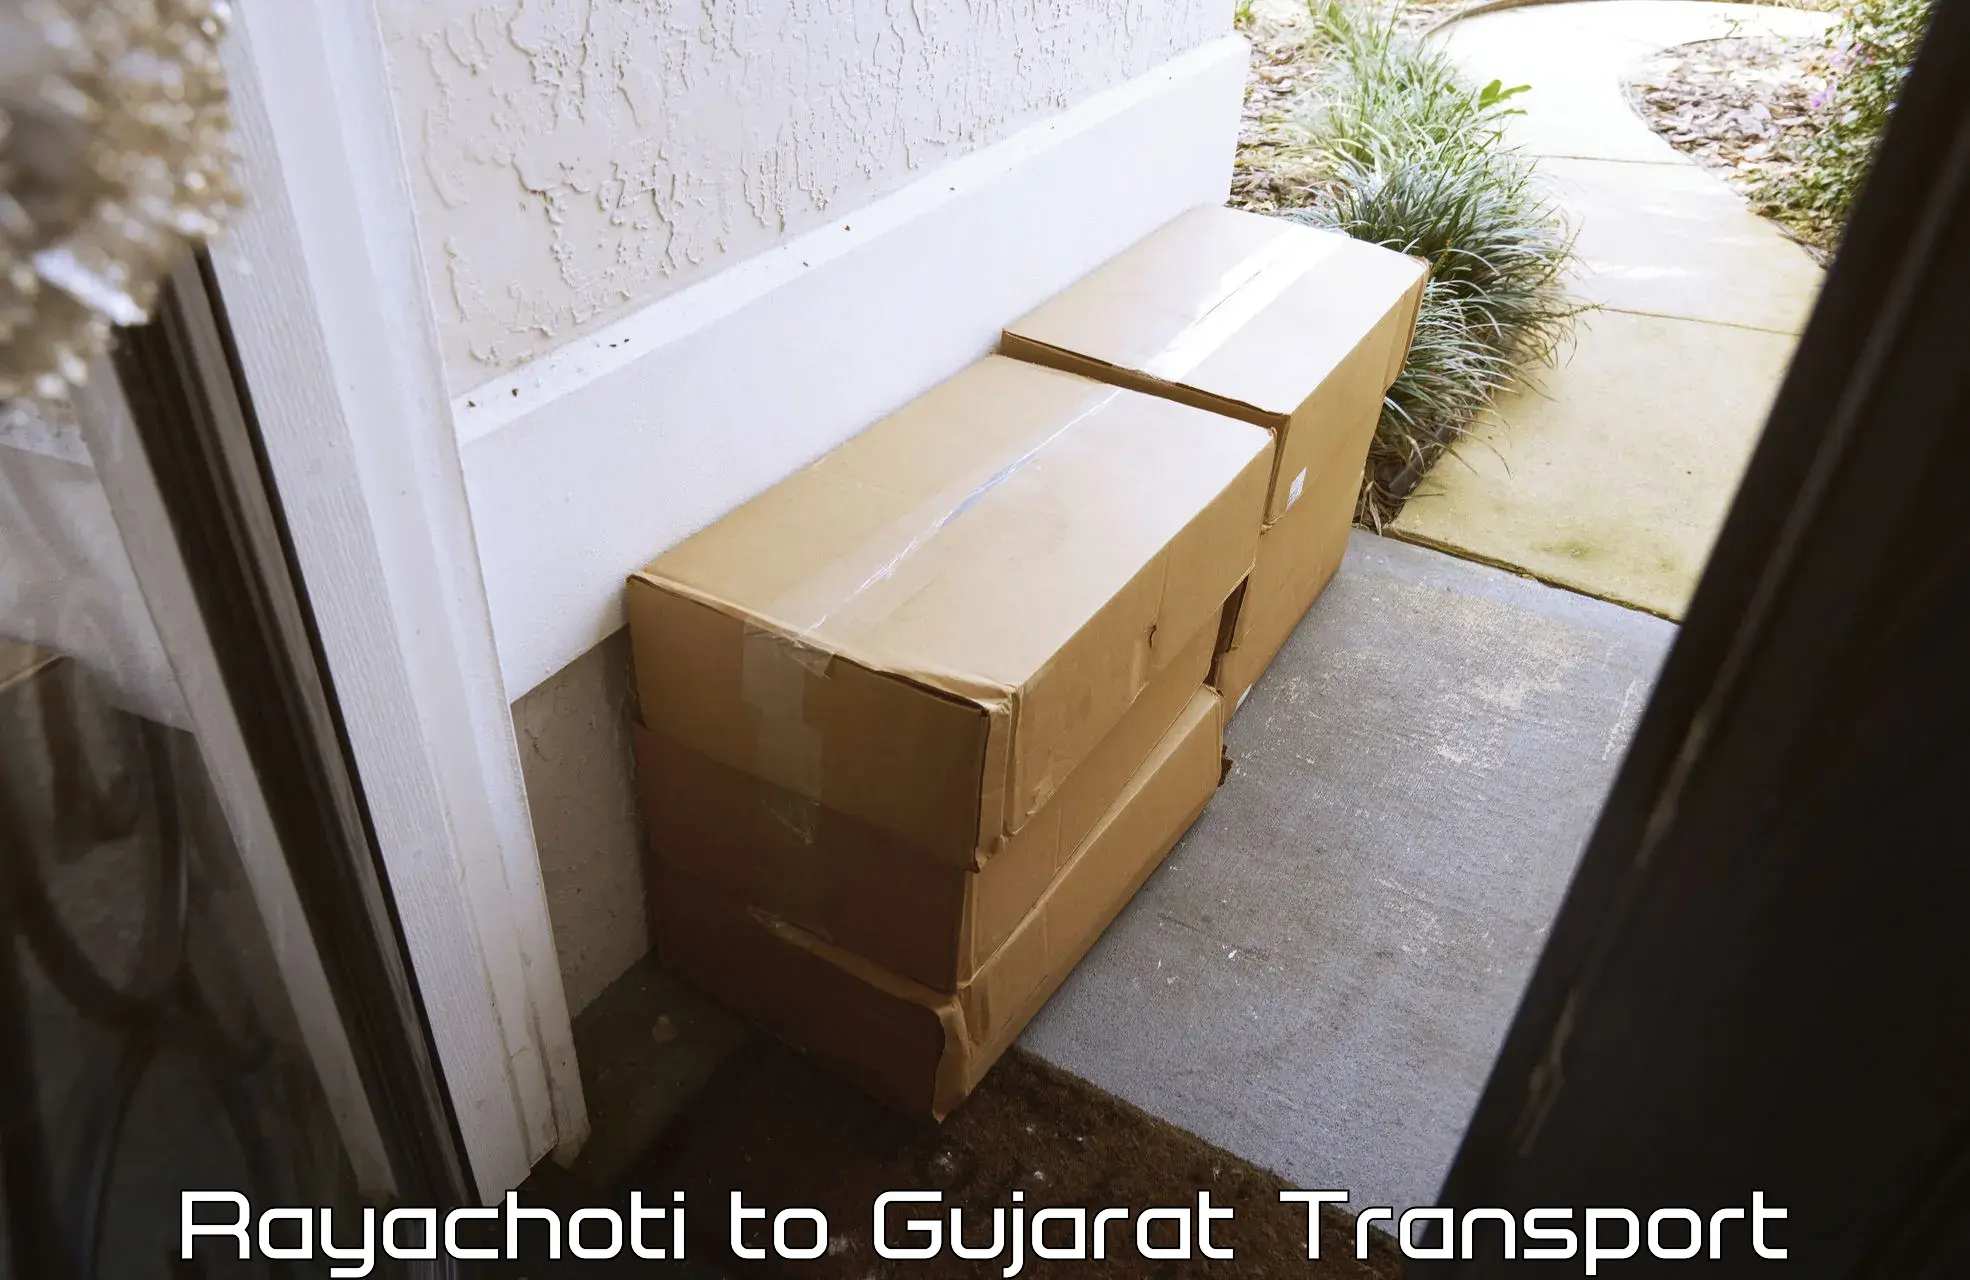 Scooty transport charges Rayachoti to Gandhinagar